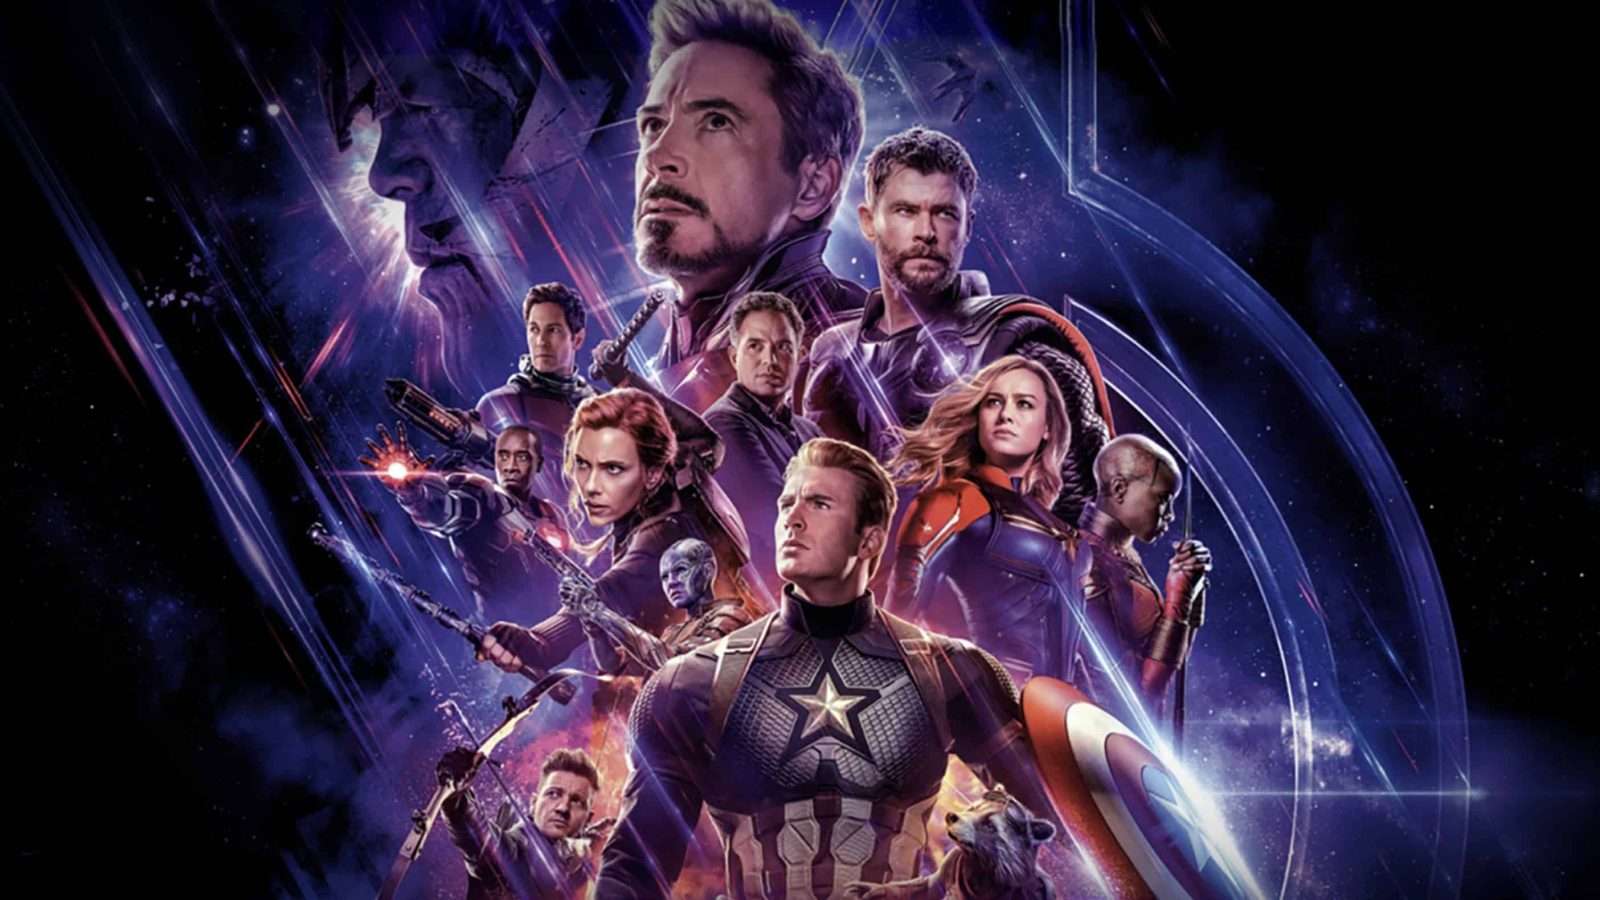 The cast of Avengers: Endgame